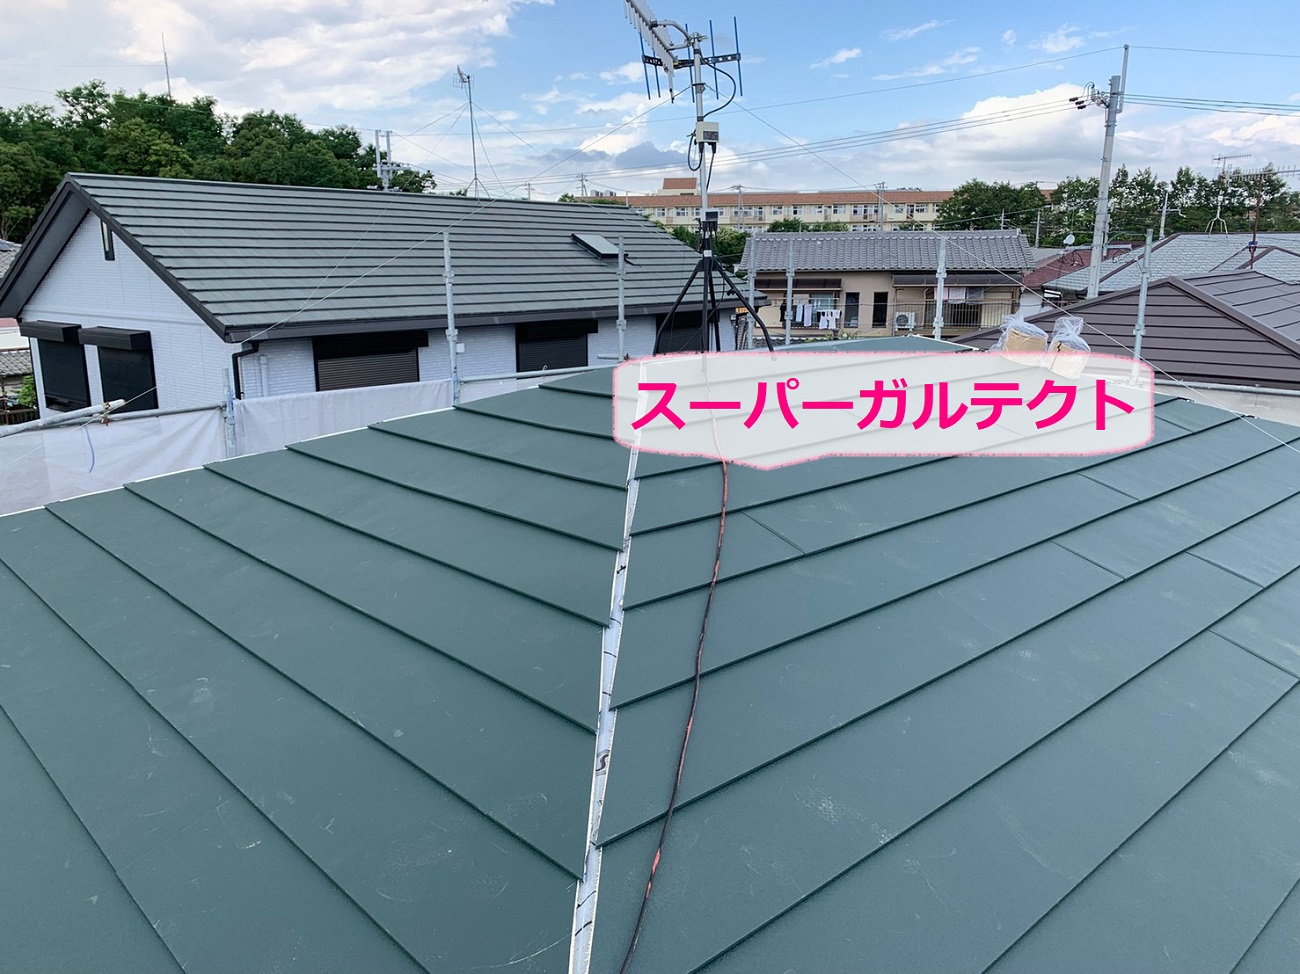 神戸市西区での寄棟平型スレート屋根へのカバー工法でスーパーガルテクト葺き